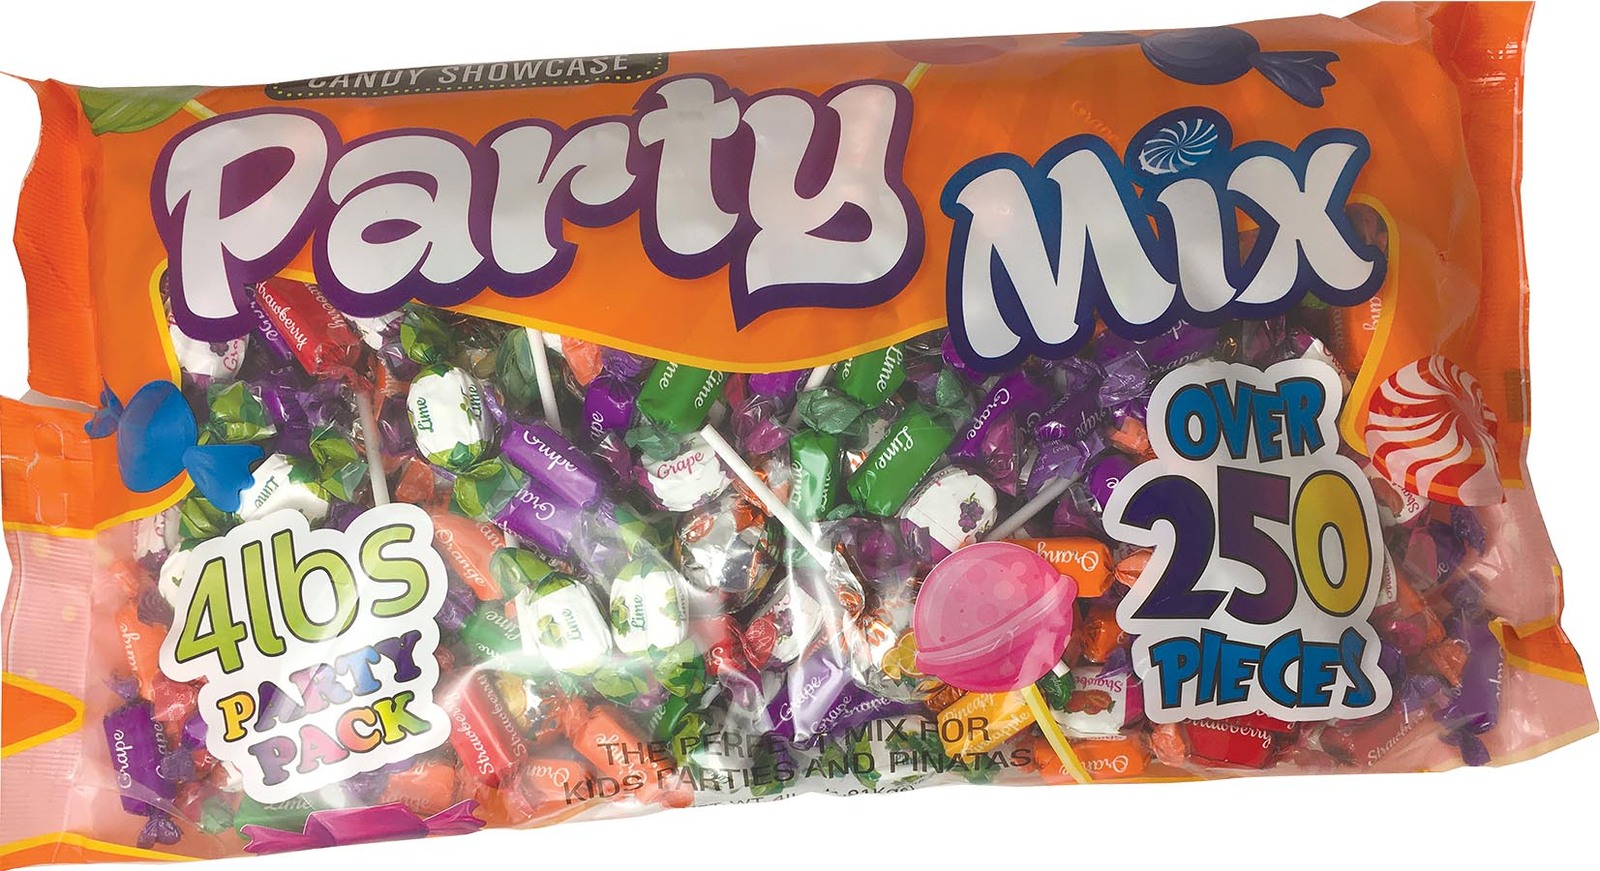 Candy Showcase Huge Party Mix Bag 4lb Bulk Bag 1.80 kg over 250 Pieces